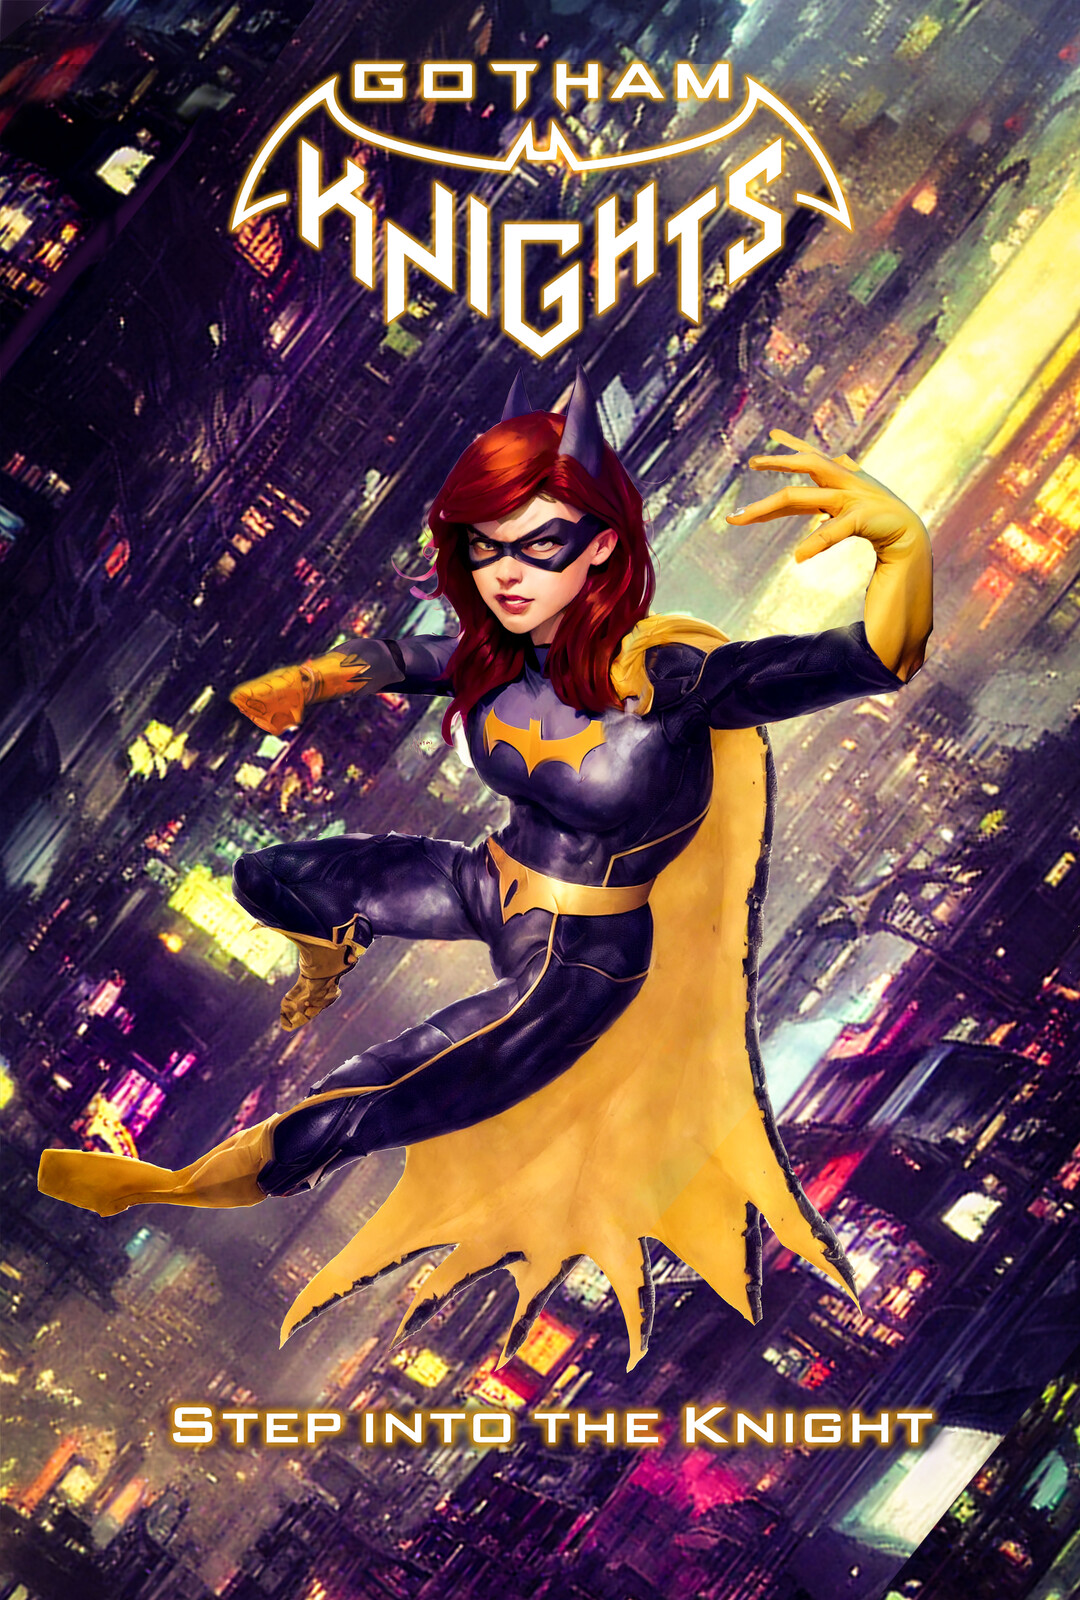 Batgirl Concept poster